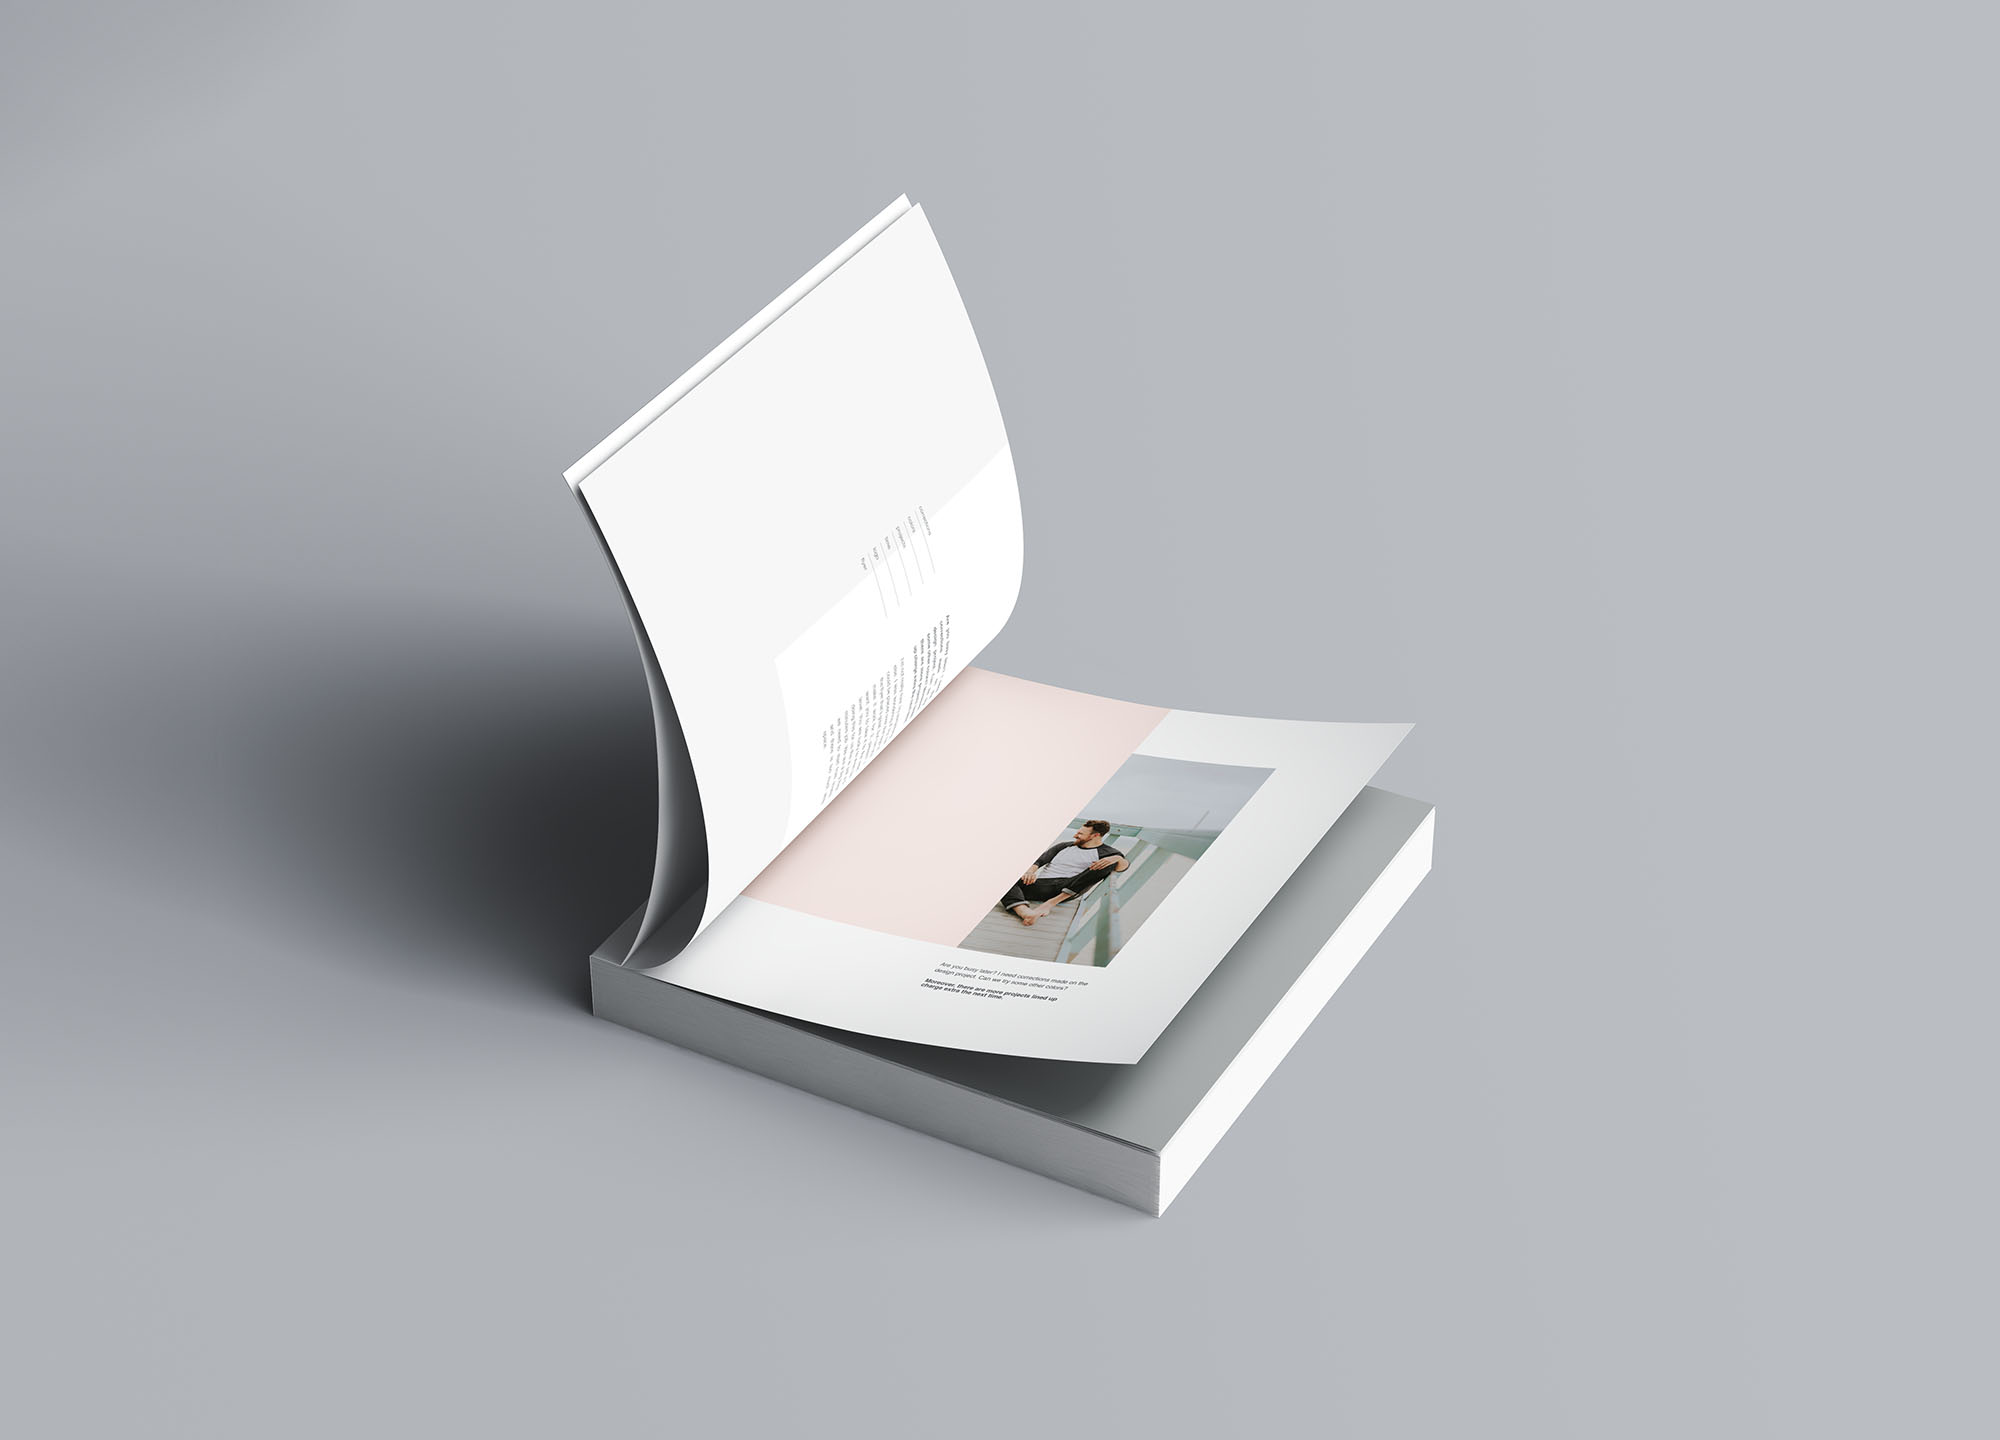 方形软封图书内页版式设计效果图样机非凡图库精选 Square Softcover Book Mockup插图(5)